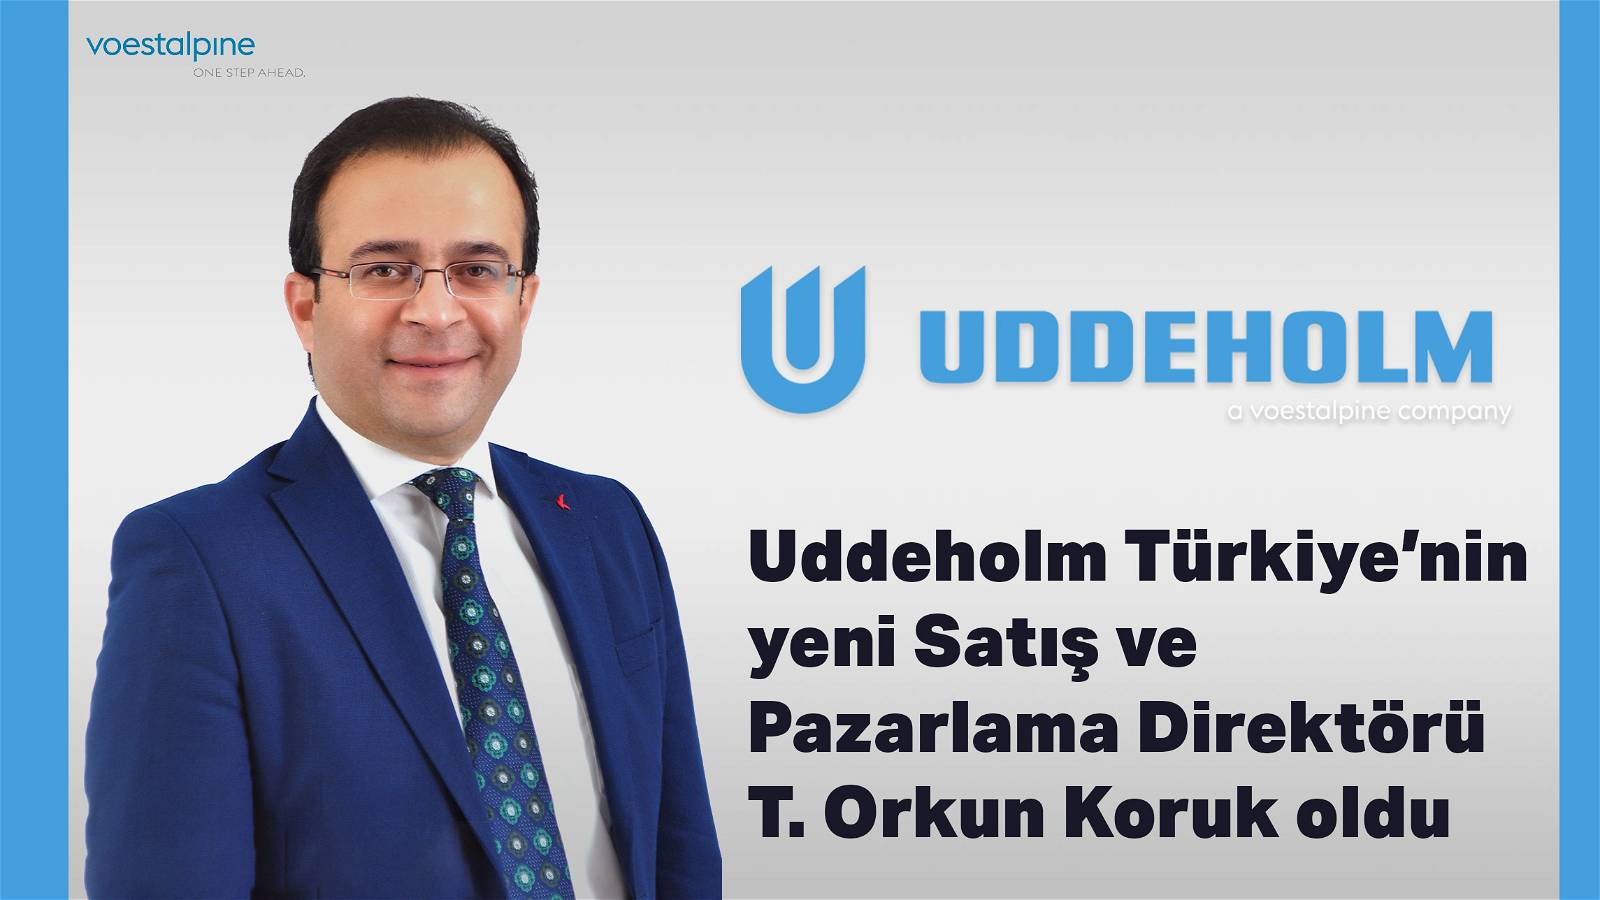 Uddeholm Türkiye’nin yeni Satış ve Pazarlama Direktörü T. Orkun Koruk oldu